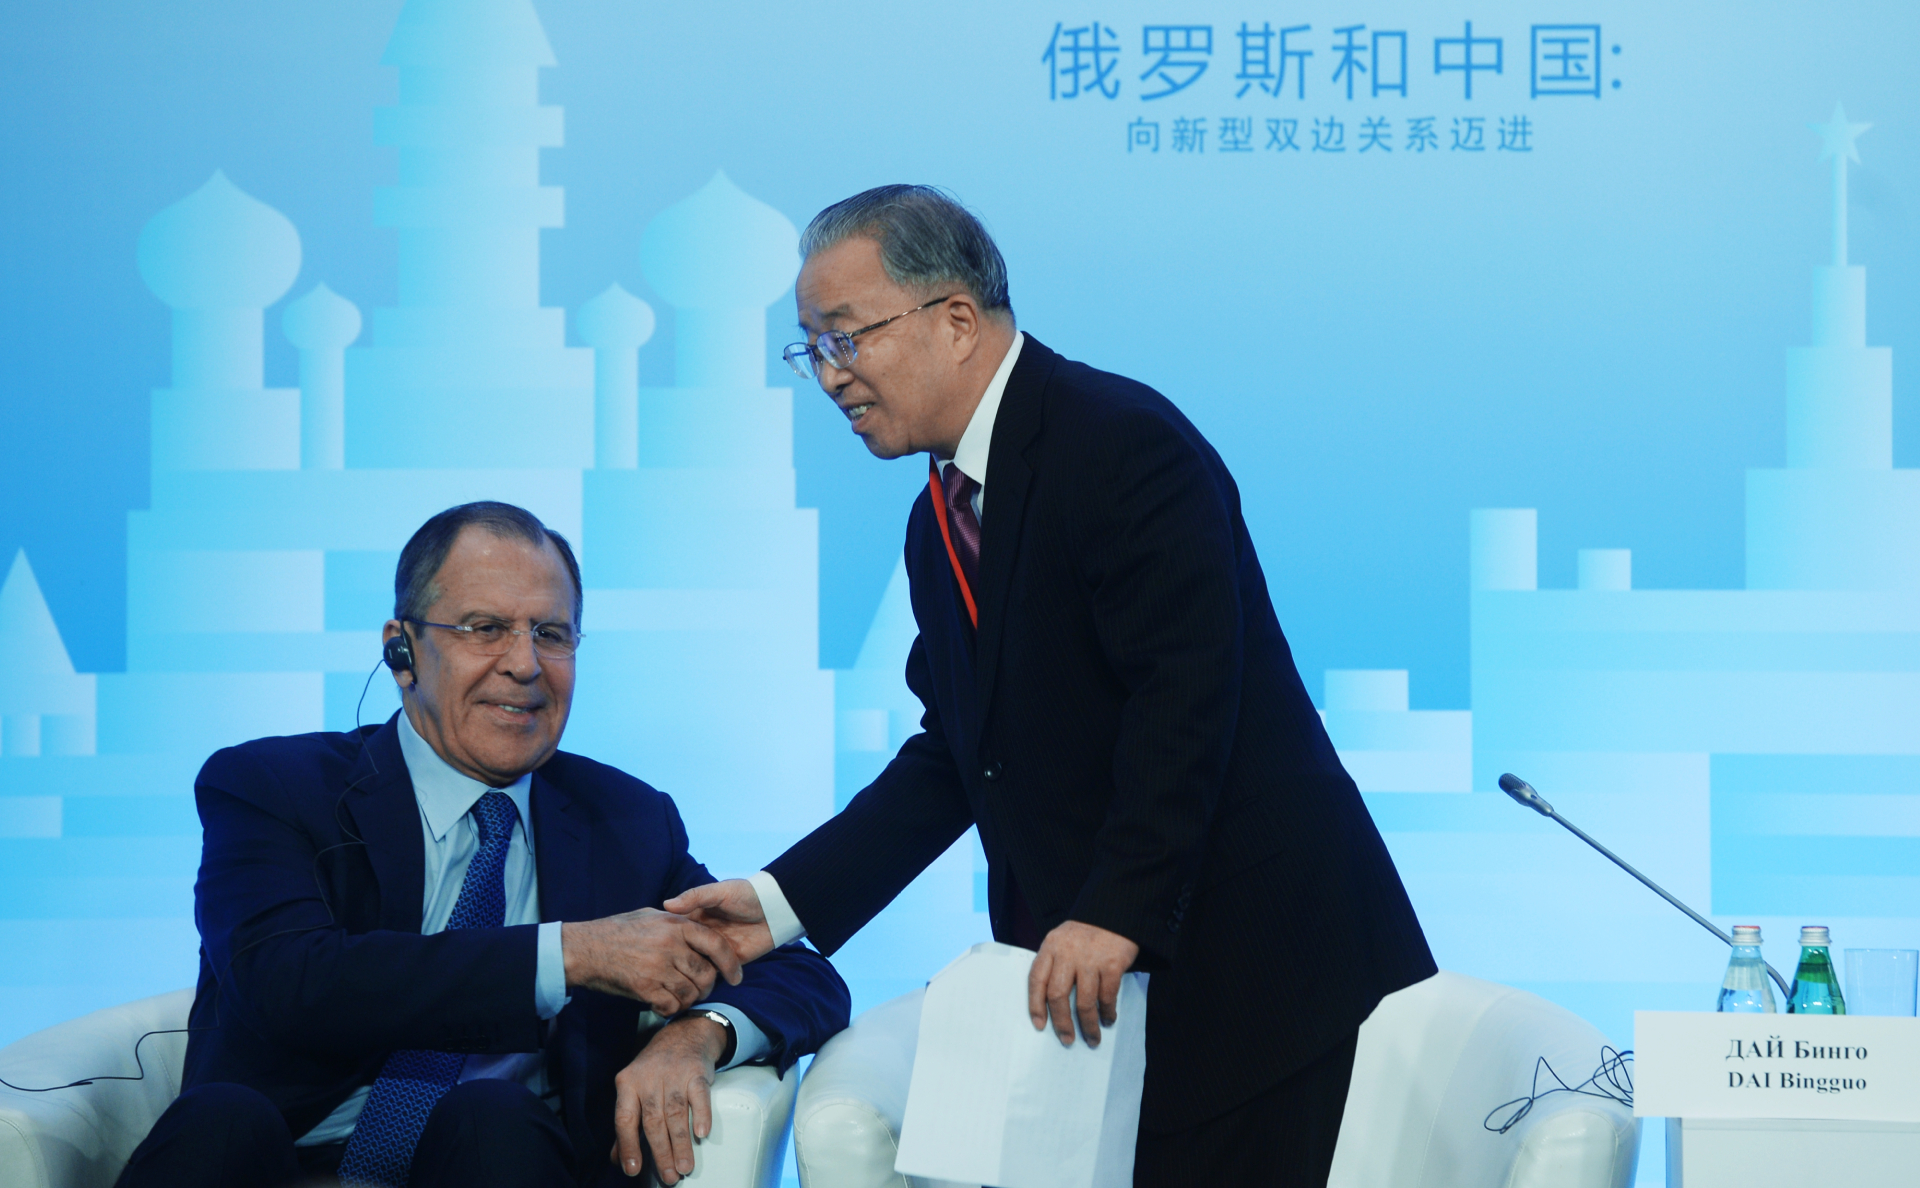 Сергей Лавров (слева) и сопредседатель Российско-Китайского комитета дружбы, мира и развития Дай Бинго